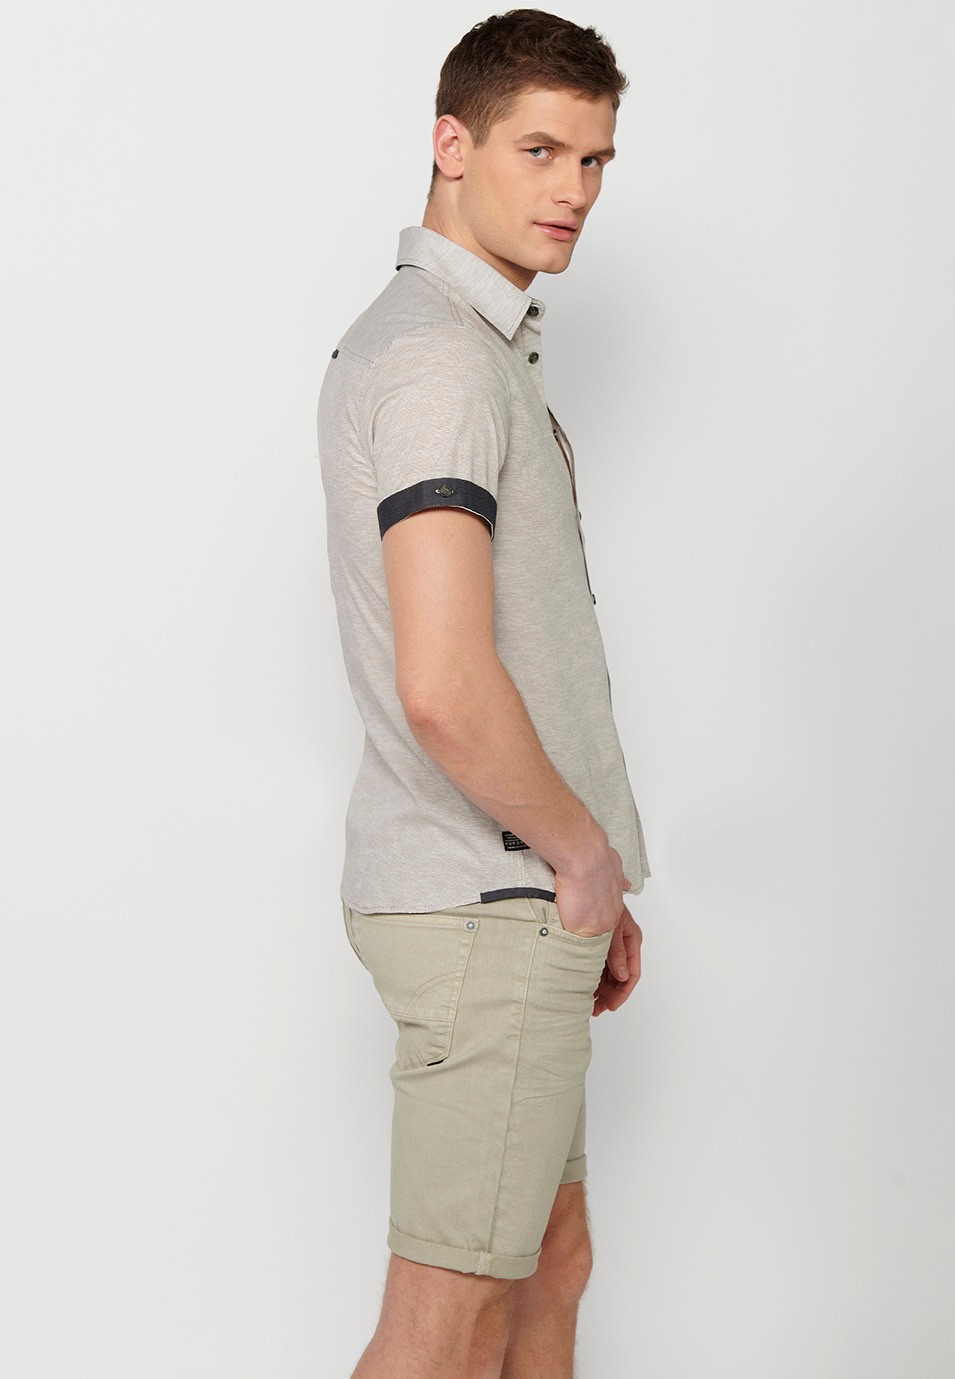 Chemise boutonnée manches courtes en coton, coloris gris pour homme